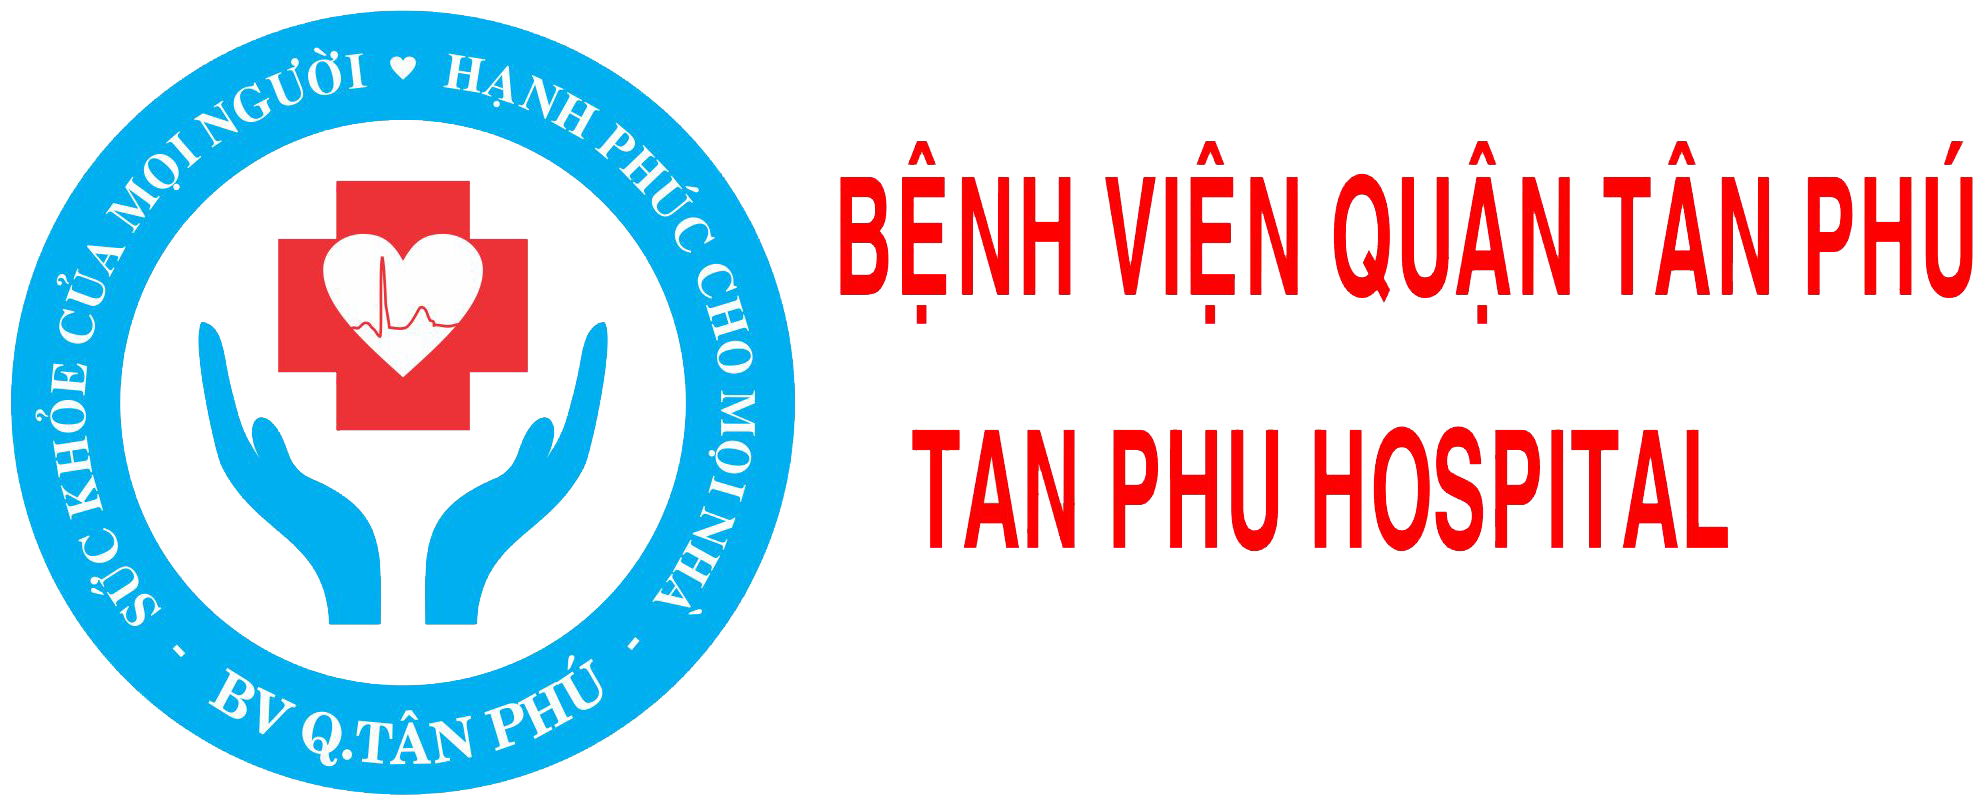 Kế hoạch tổ chức tiêm chủng vắc xin phòng COVID-19 mũi 1 và mũi 2 cho đối tượng đã tiêm mũi 1 tại bệnh viện quận Tân Phú